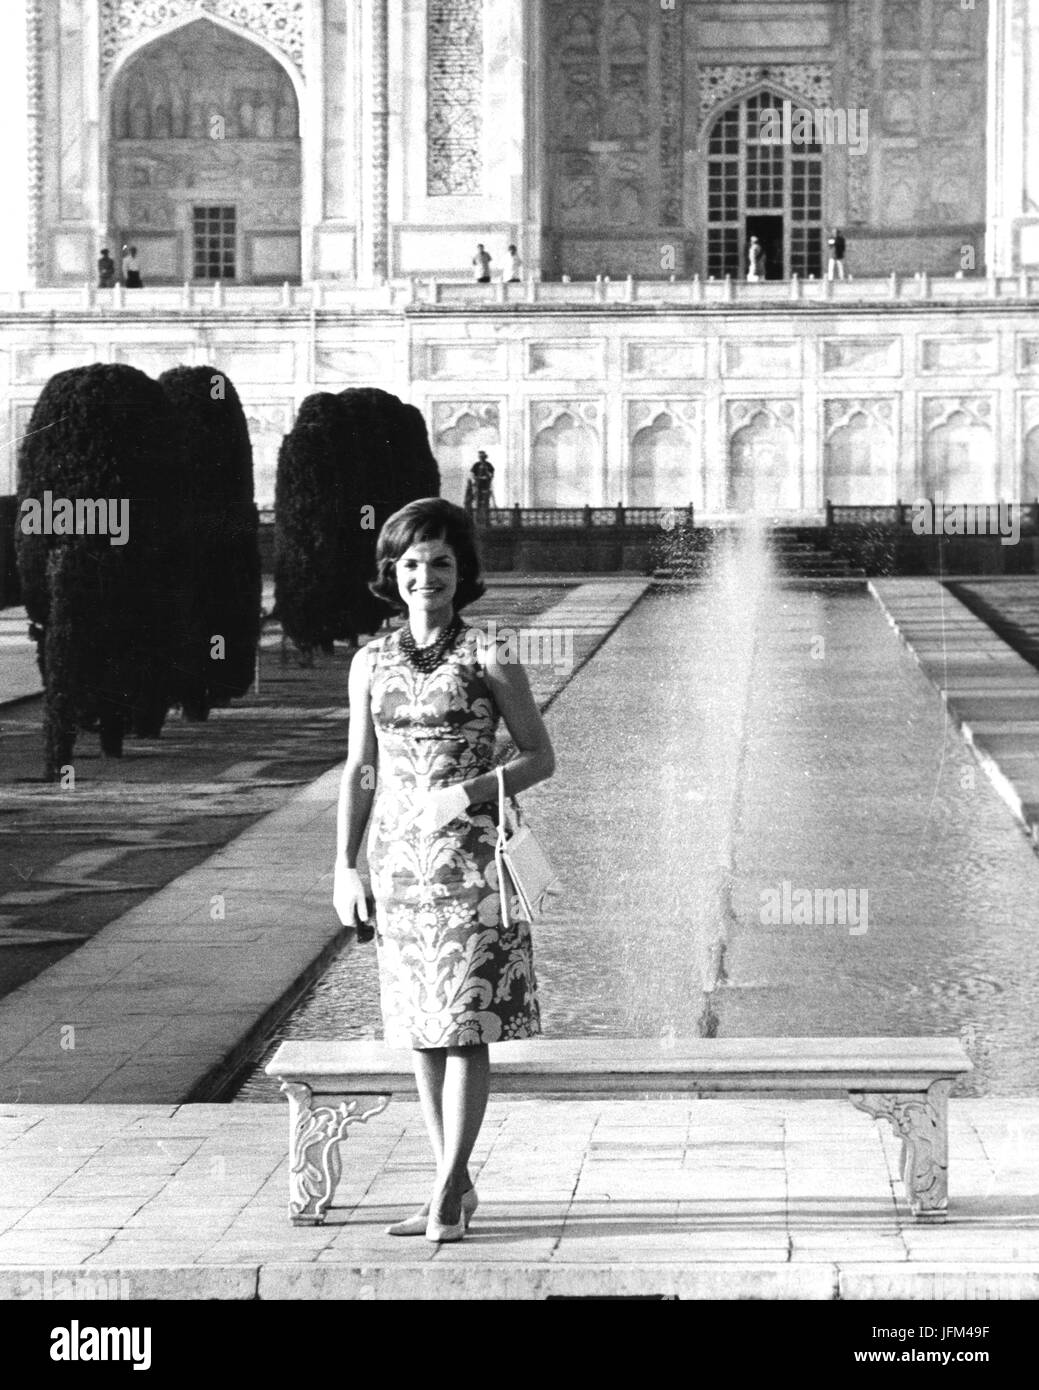 La sig.ra Jacqueline Kennedy, First Lady degli Stati Uniti, pone al famoso monumento indiano, il Taj Mahal, durante la sua visita in India.3/1962 Foto Stock